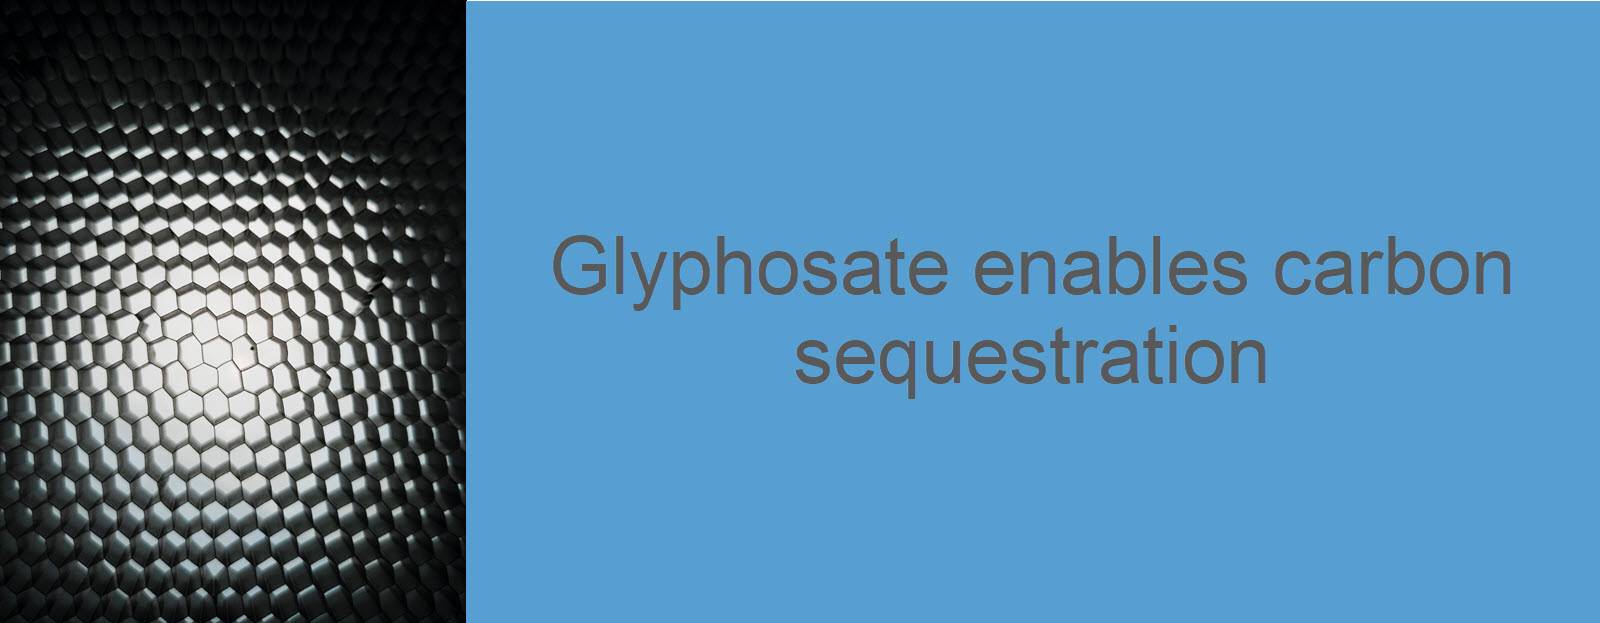 Glyphosate enables carbon sequestration